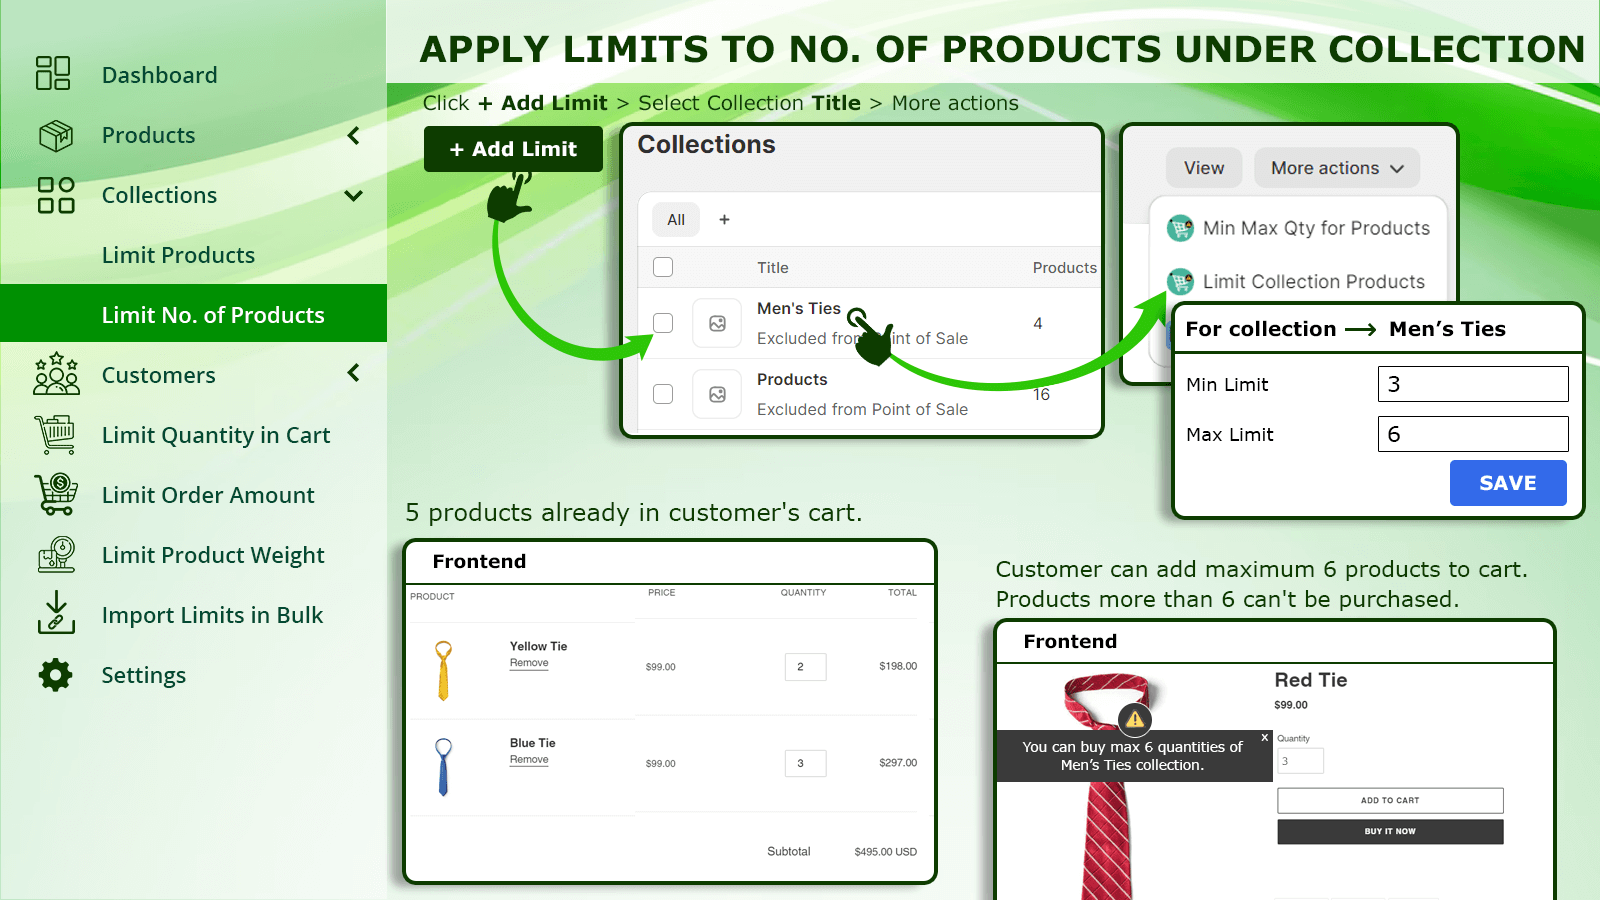 Aplique limites ao número de produtos sob coleção